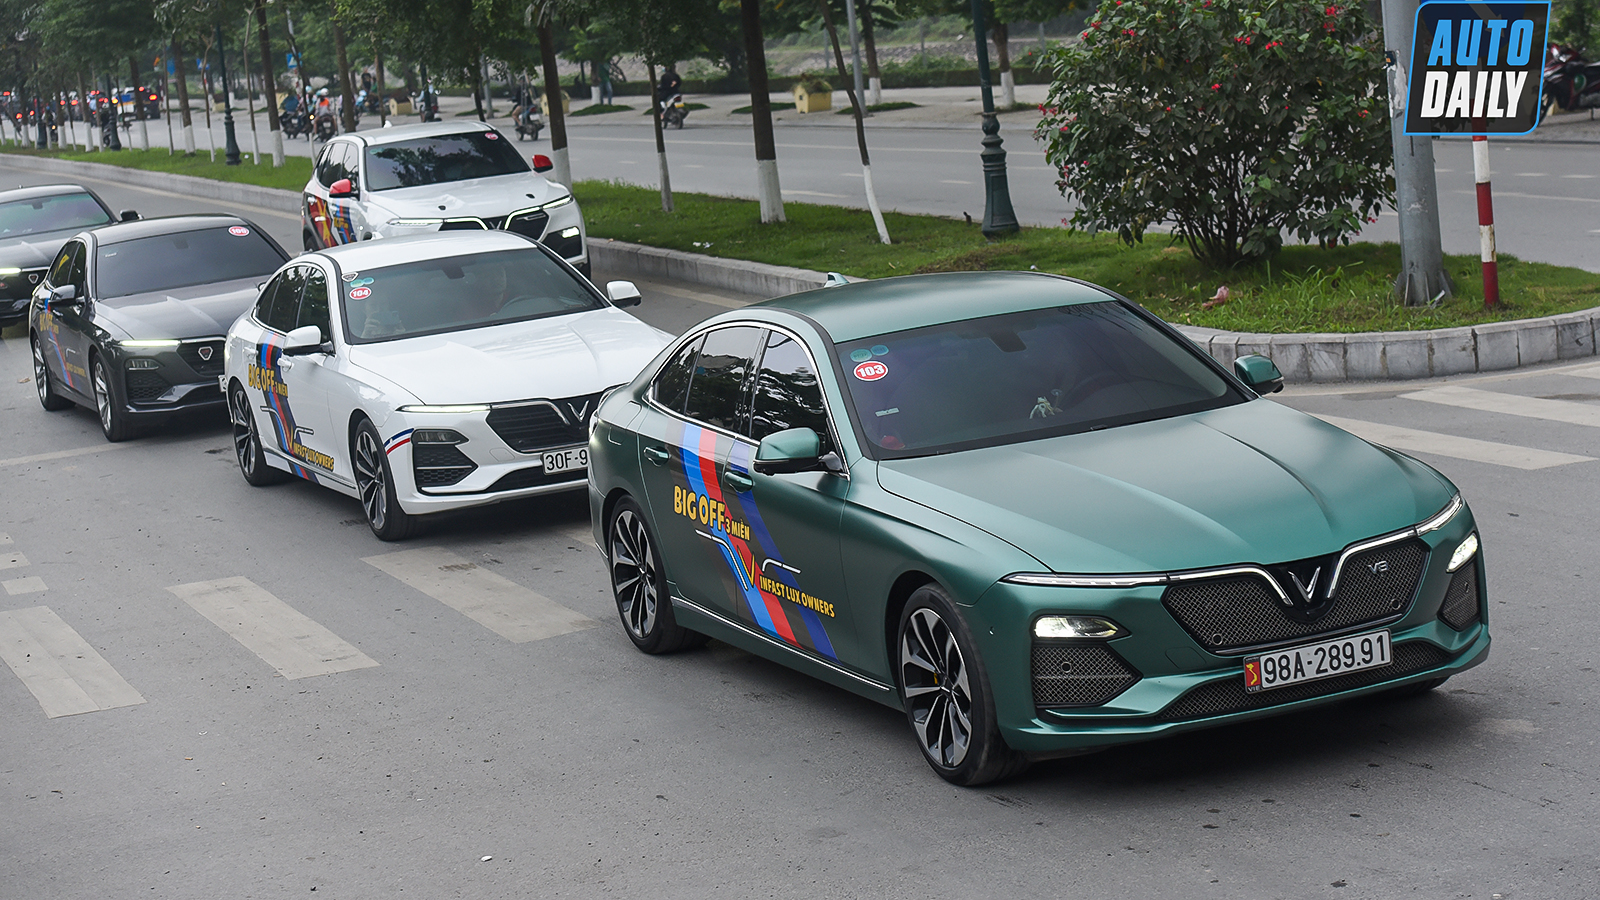 Chùm ảnh gần 60 xe VinFast Lux tại Hà Nội xuất phát Offline 3 miền tại Hội An dsc-6258-copy.jpg